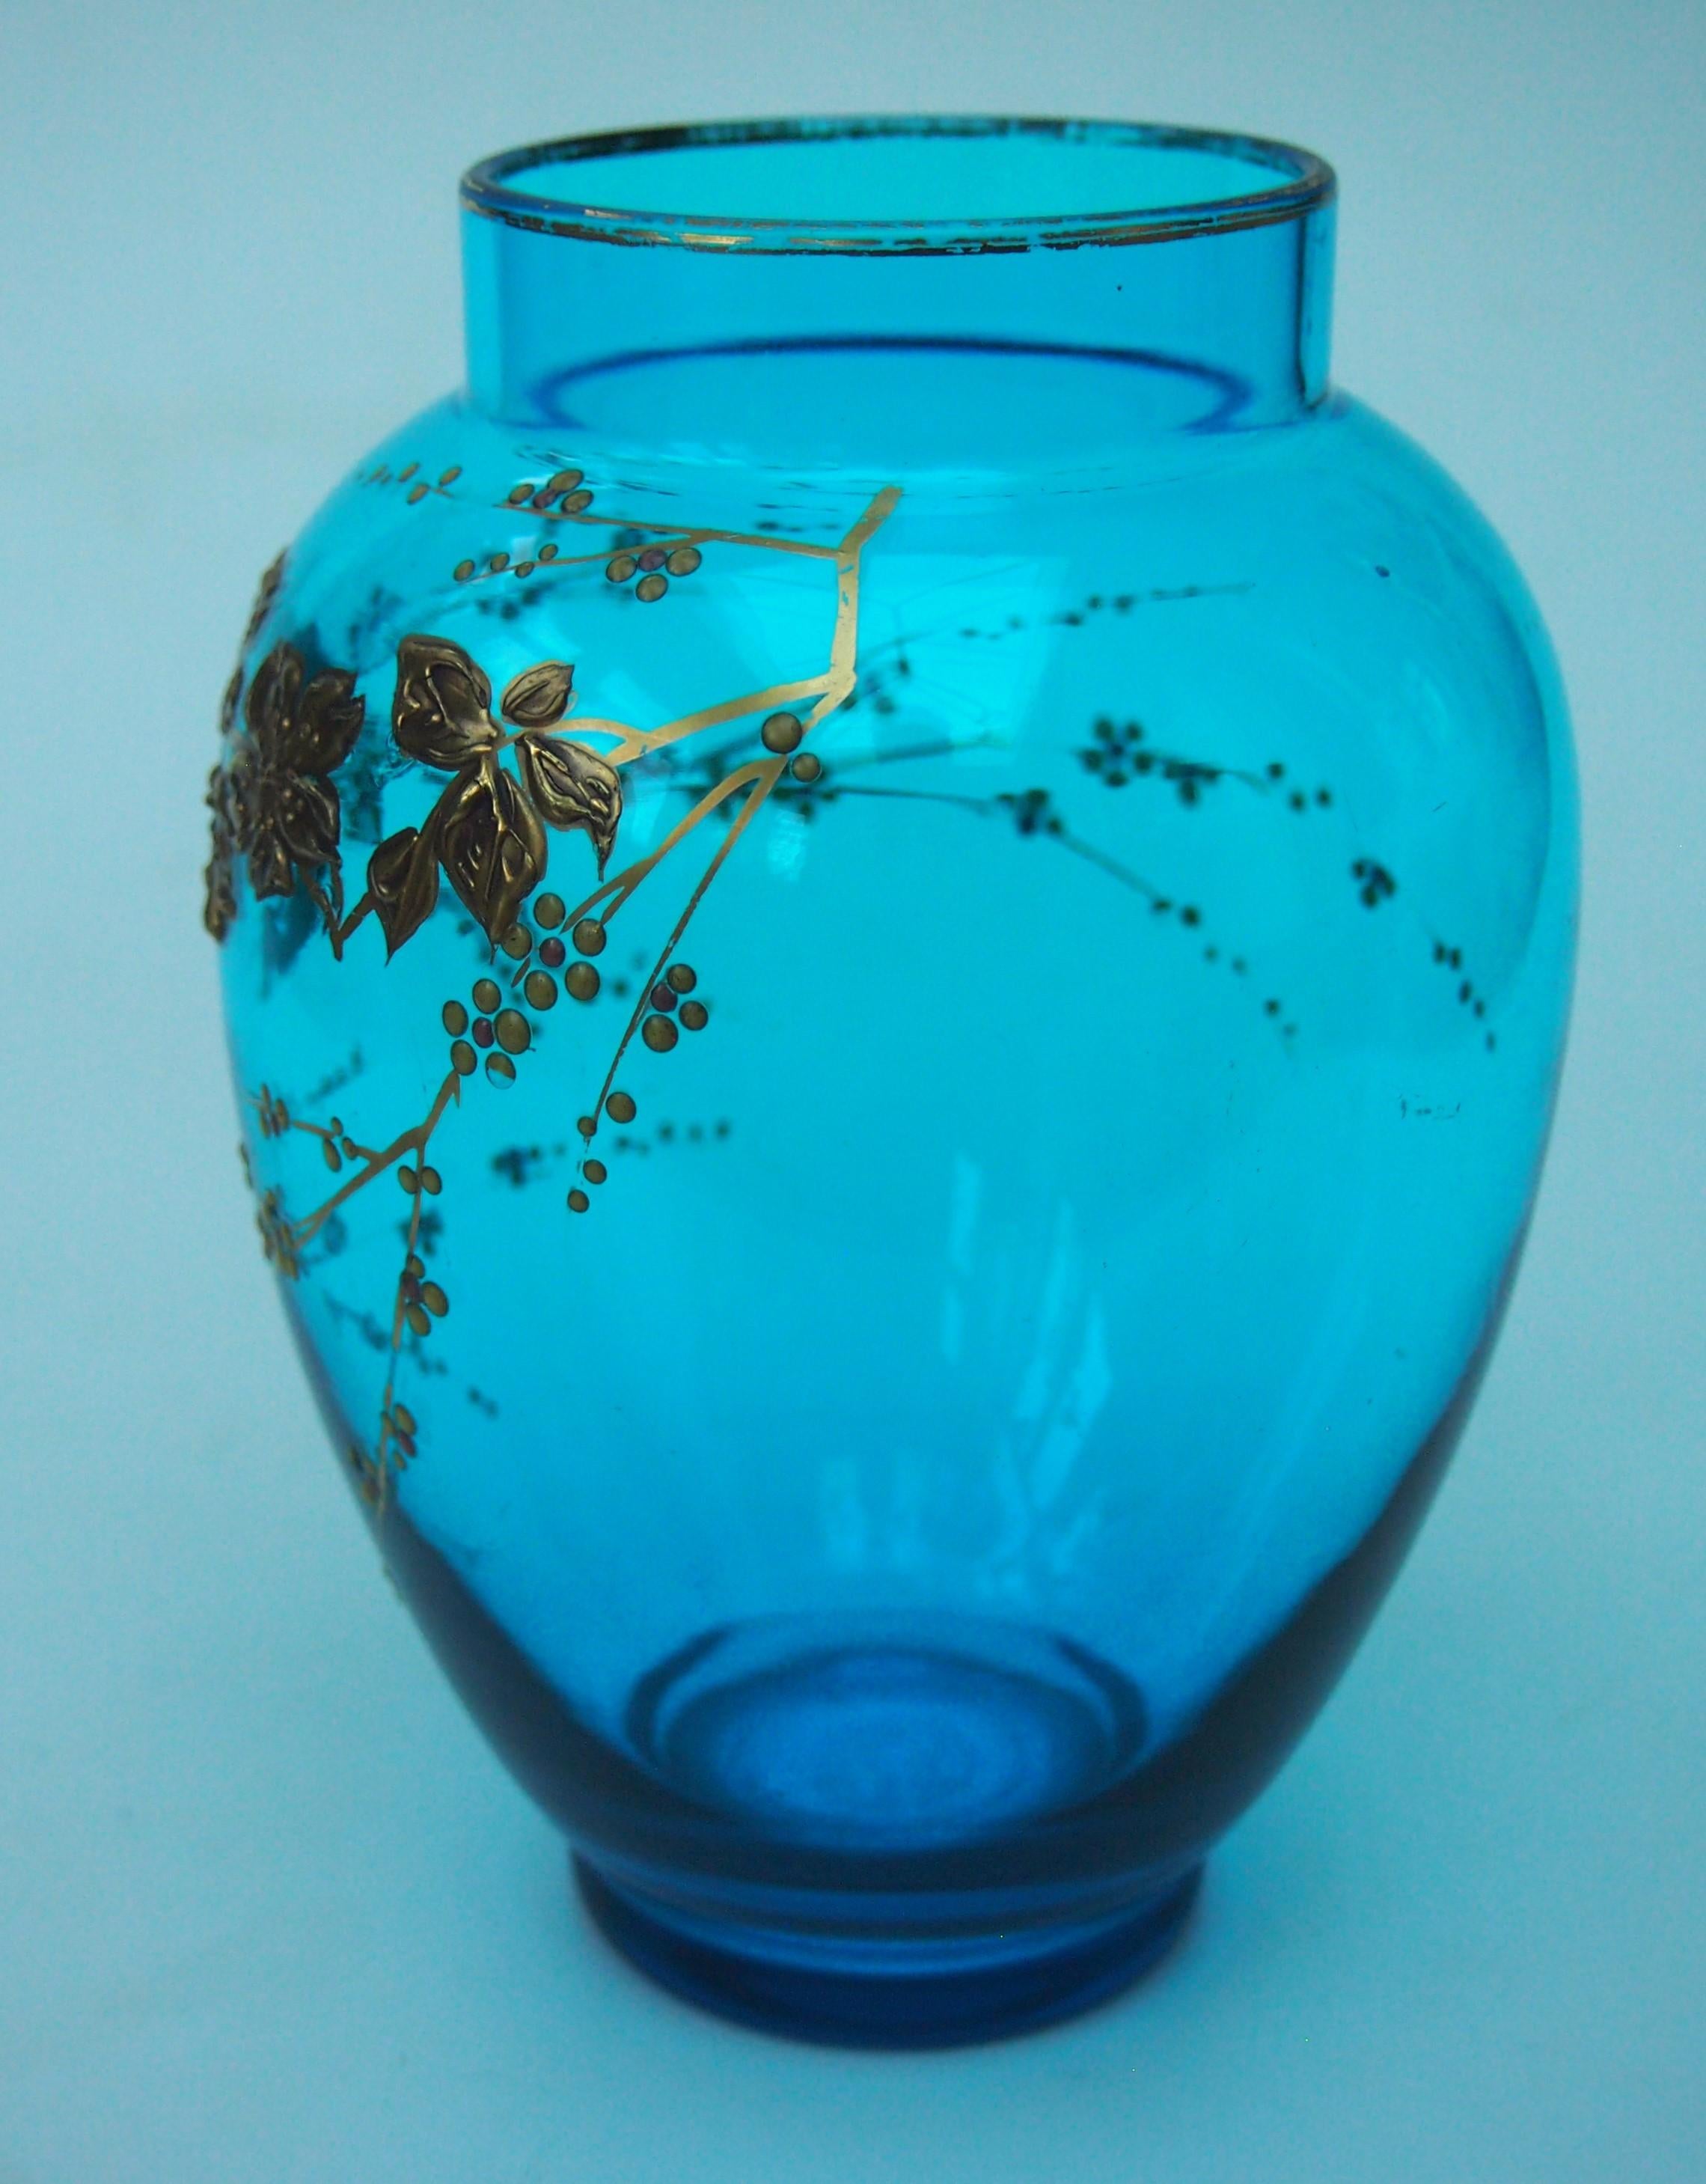 Ein fabelhaftes Aesthetic Movement hellblau und tief vergoldet Baccarat Crystal Vase. Dieses leuchtende Blau war eine ihrer charakteristischen Farben - es ist auch  tief vergoldet in der Baccarat Technik der erhabenen Vergoldung, zeigt blühende